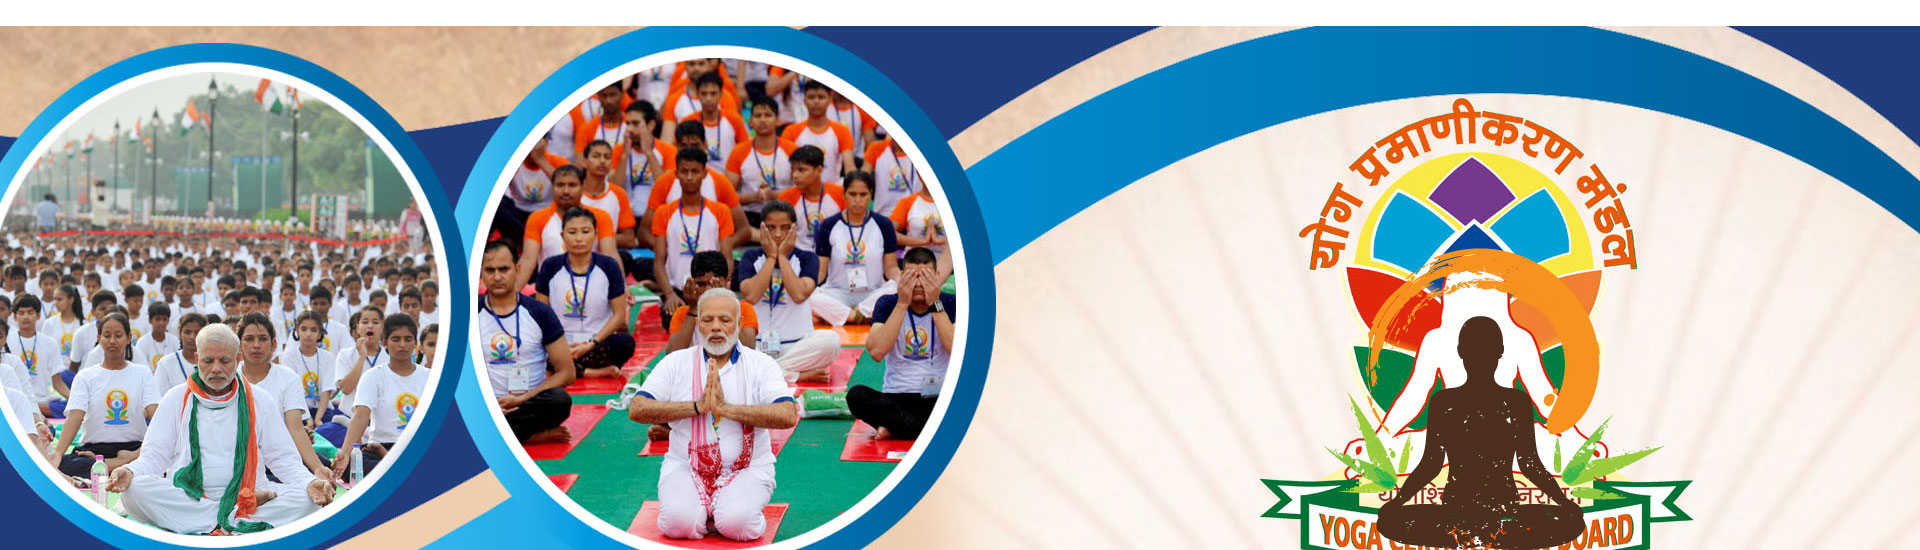 online-yoga-classes-delhi-india-logo.png